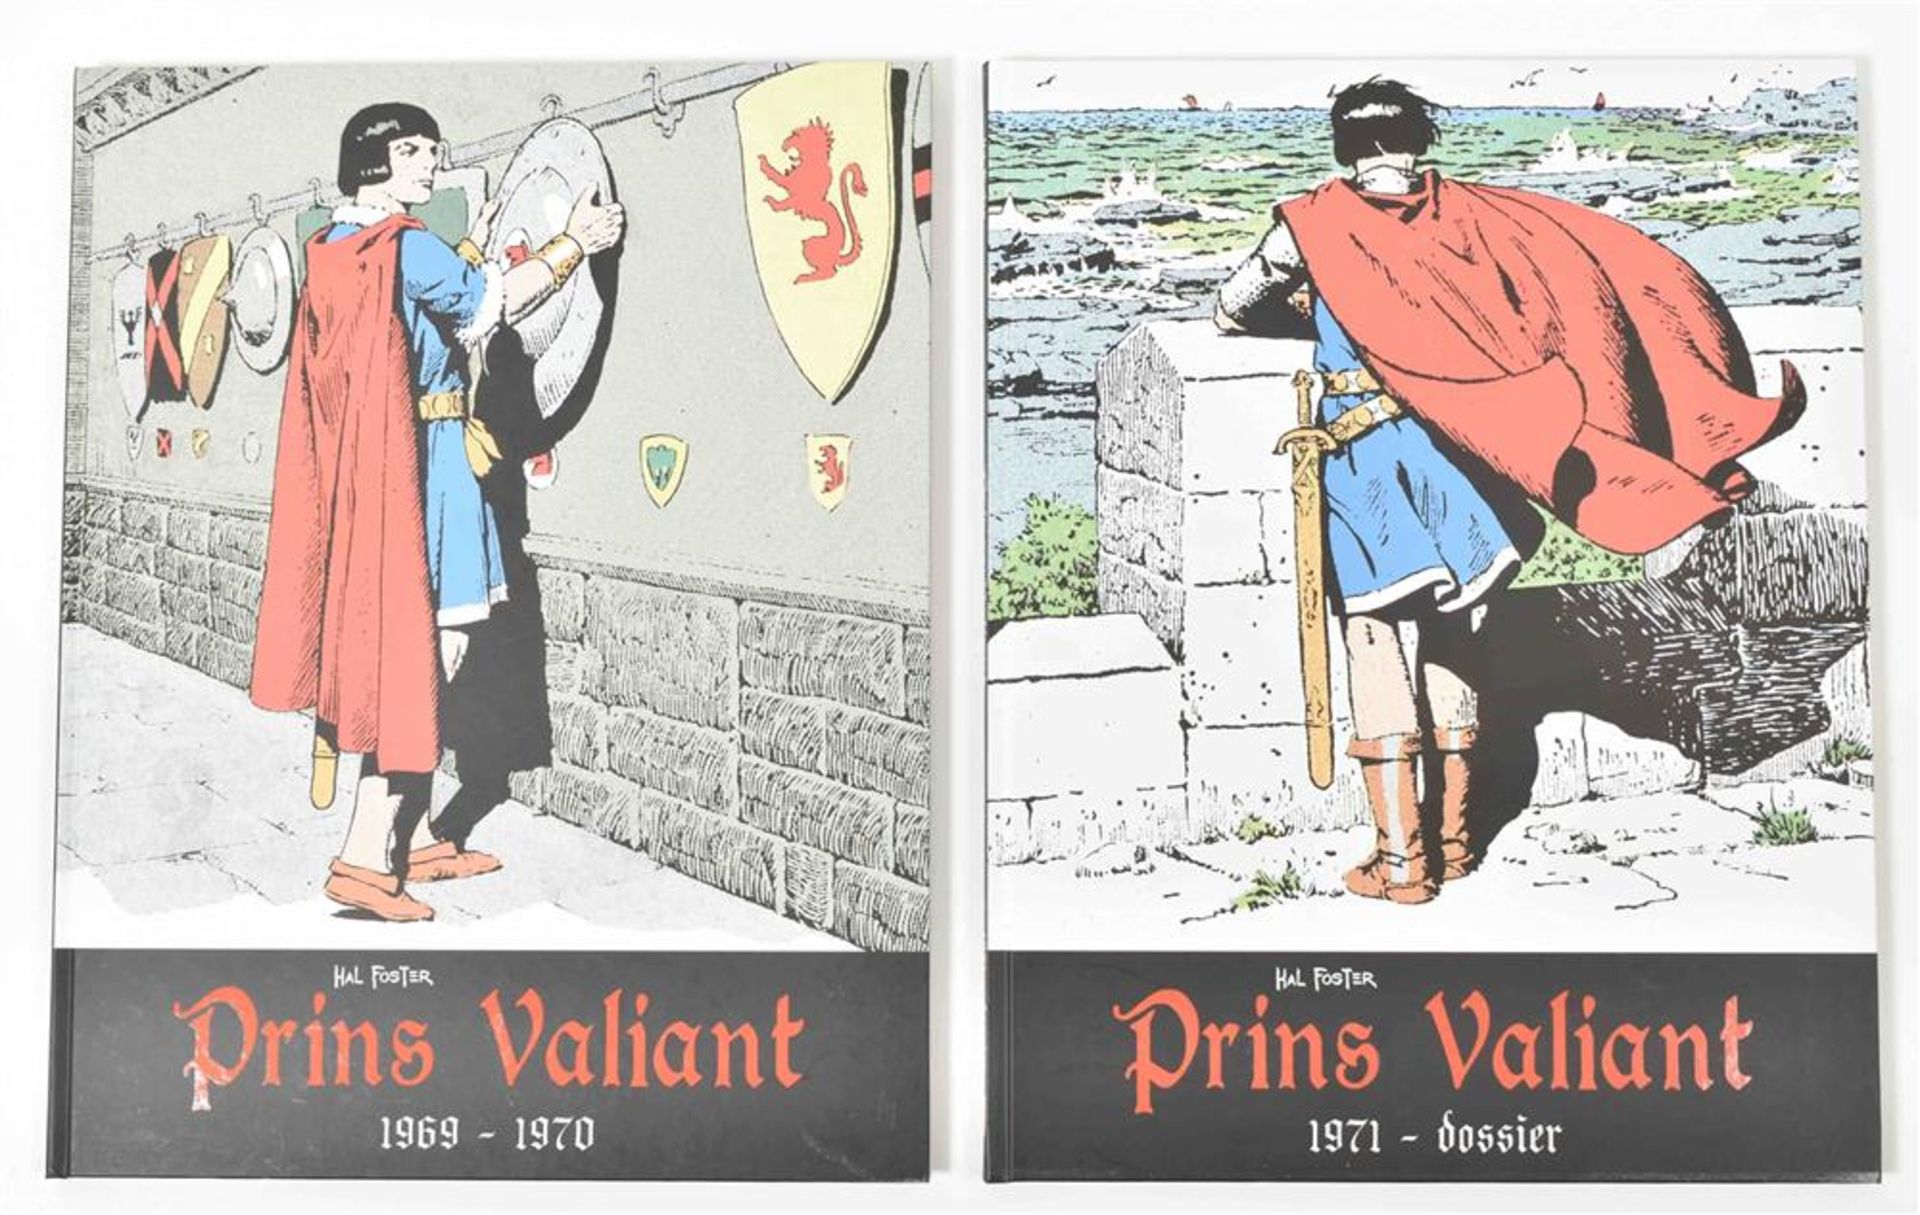 Foster, H. Prins Valiant - Bild 6 aus 10